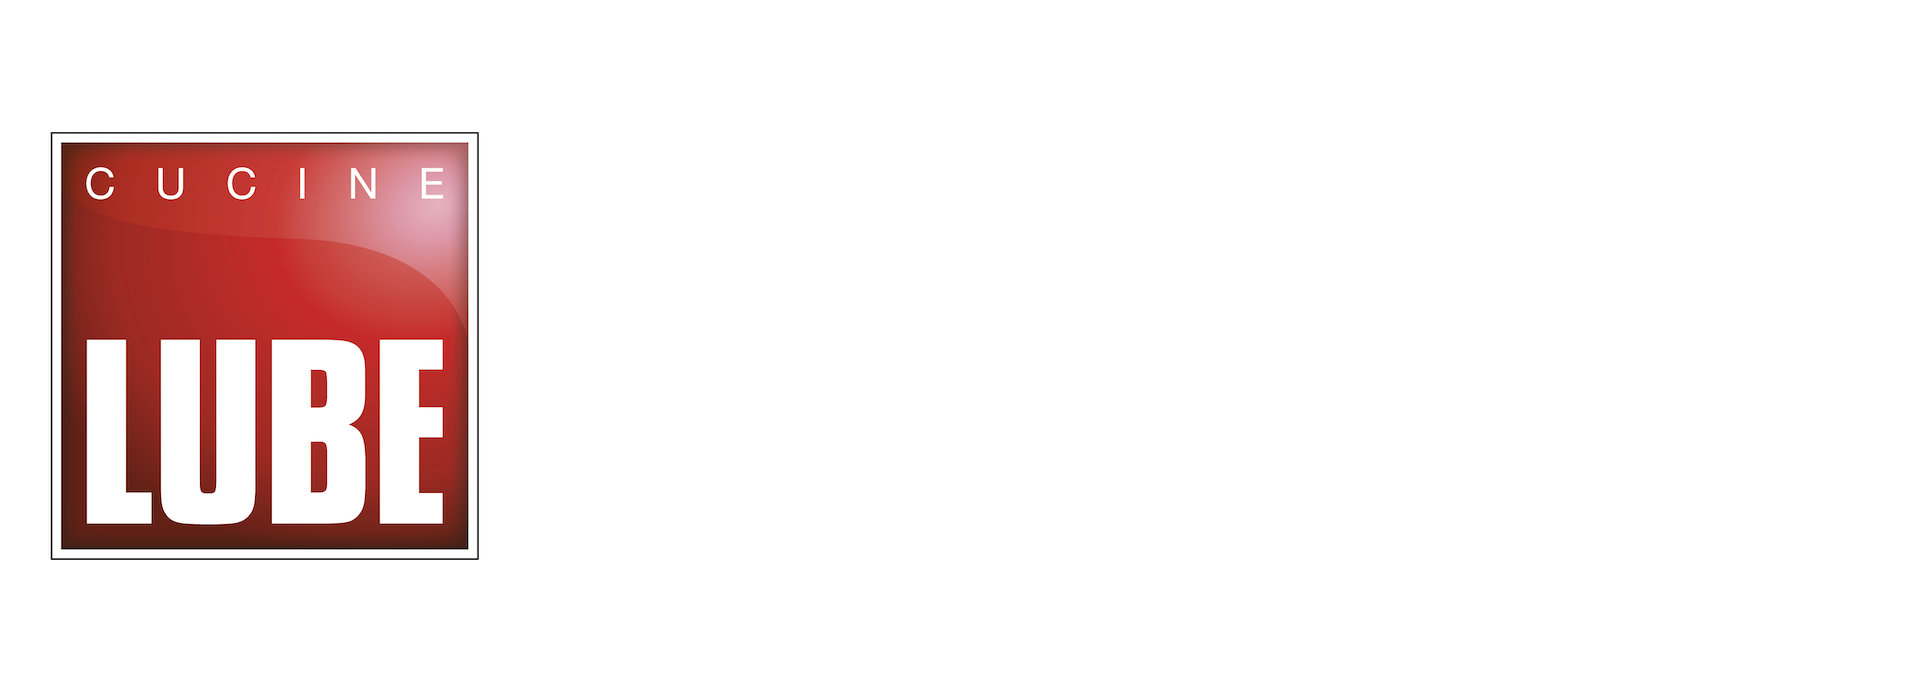 Lube Store Rosà Bassano